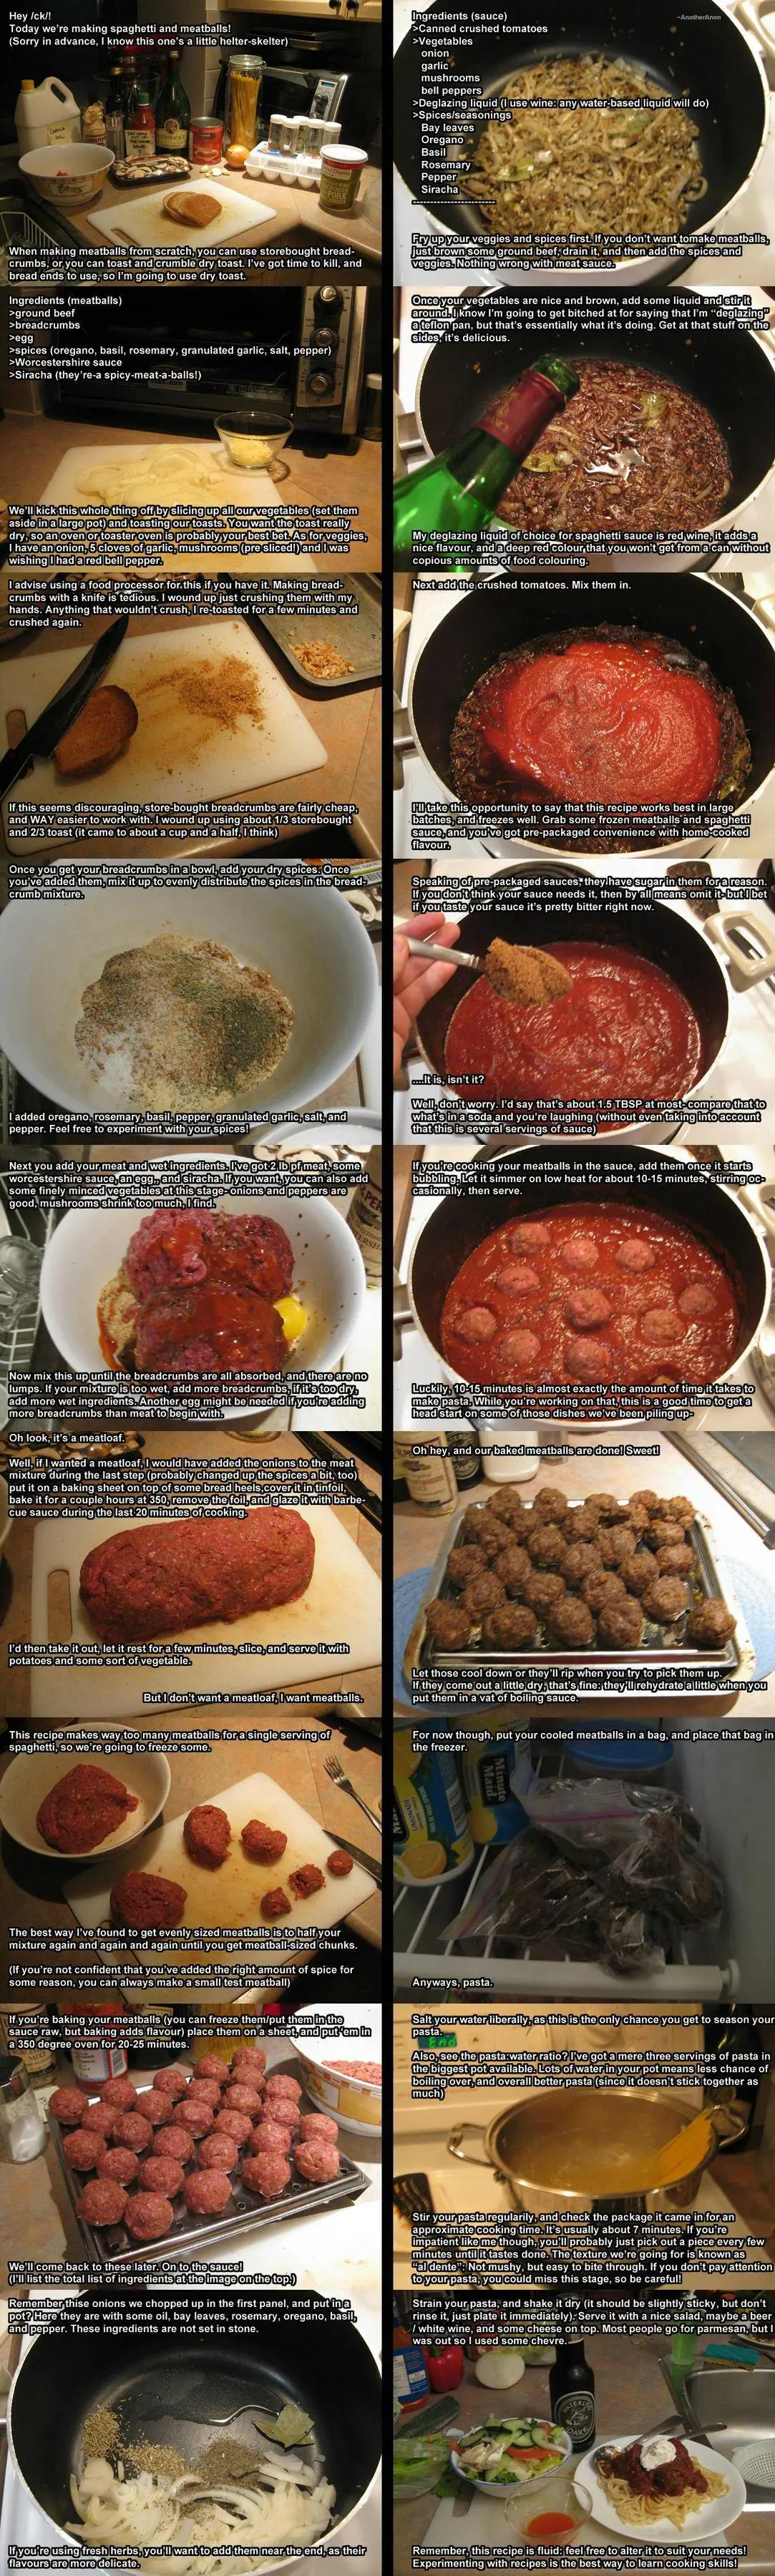 /fit/ recipe - Spaghetti and Meatballs